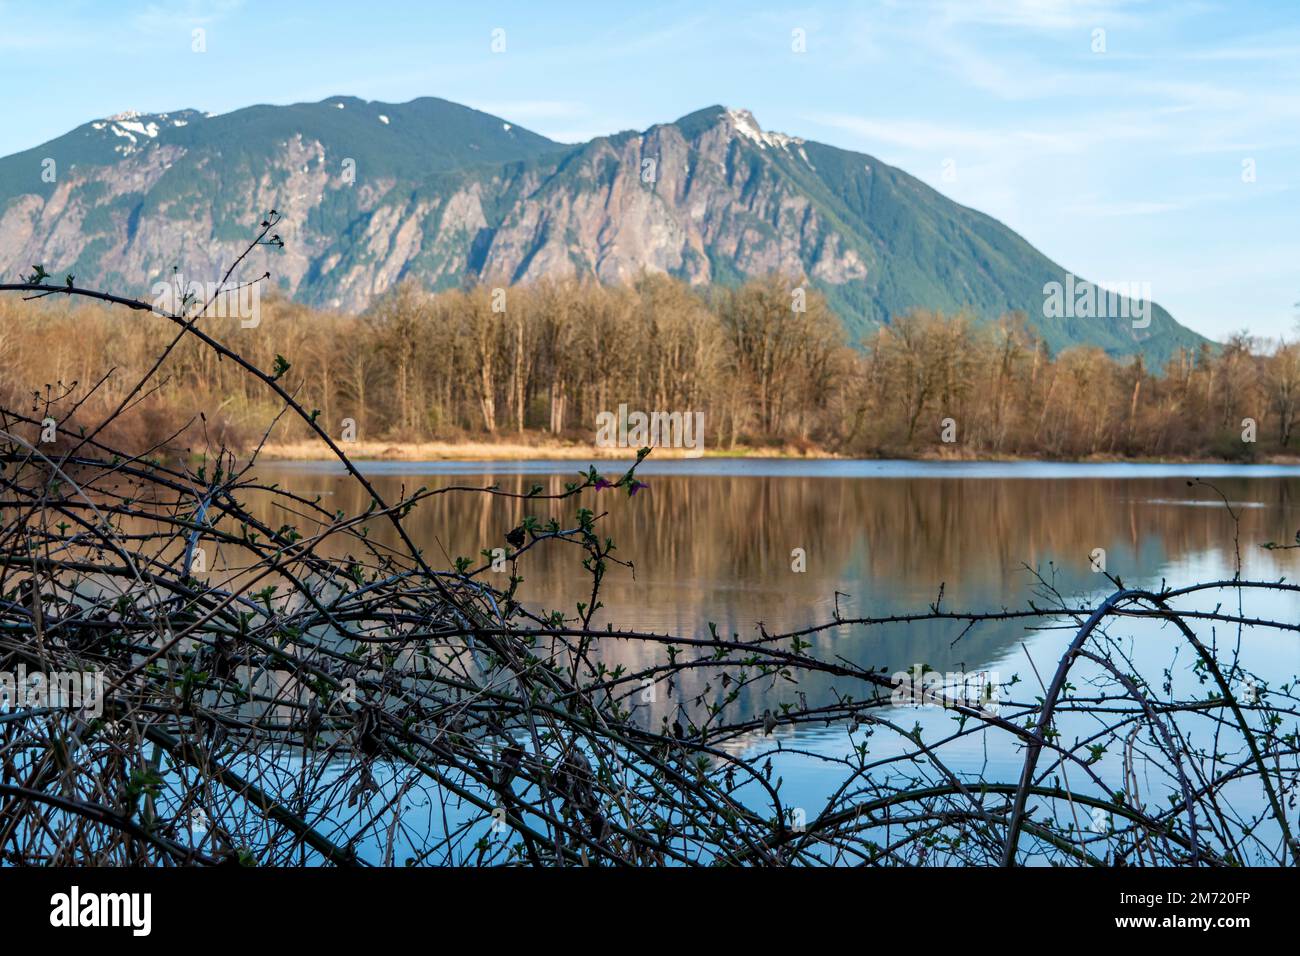 BlackBerry im Vordergrund mit dem Berg Si und eine Reihe blattloser Bäume spiegeln sich im ruhigen Wasser des Borst Lake in Snoqualmie, Washingt Stockfoto